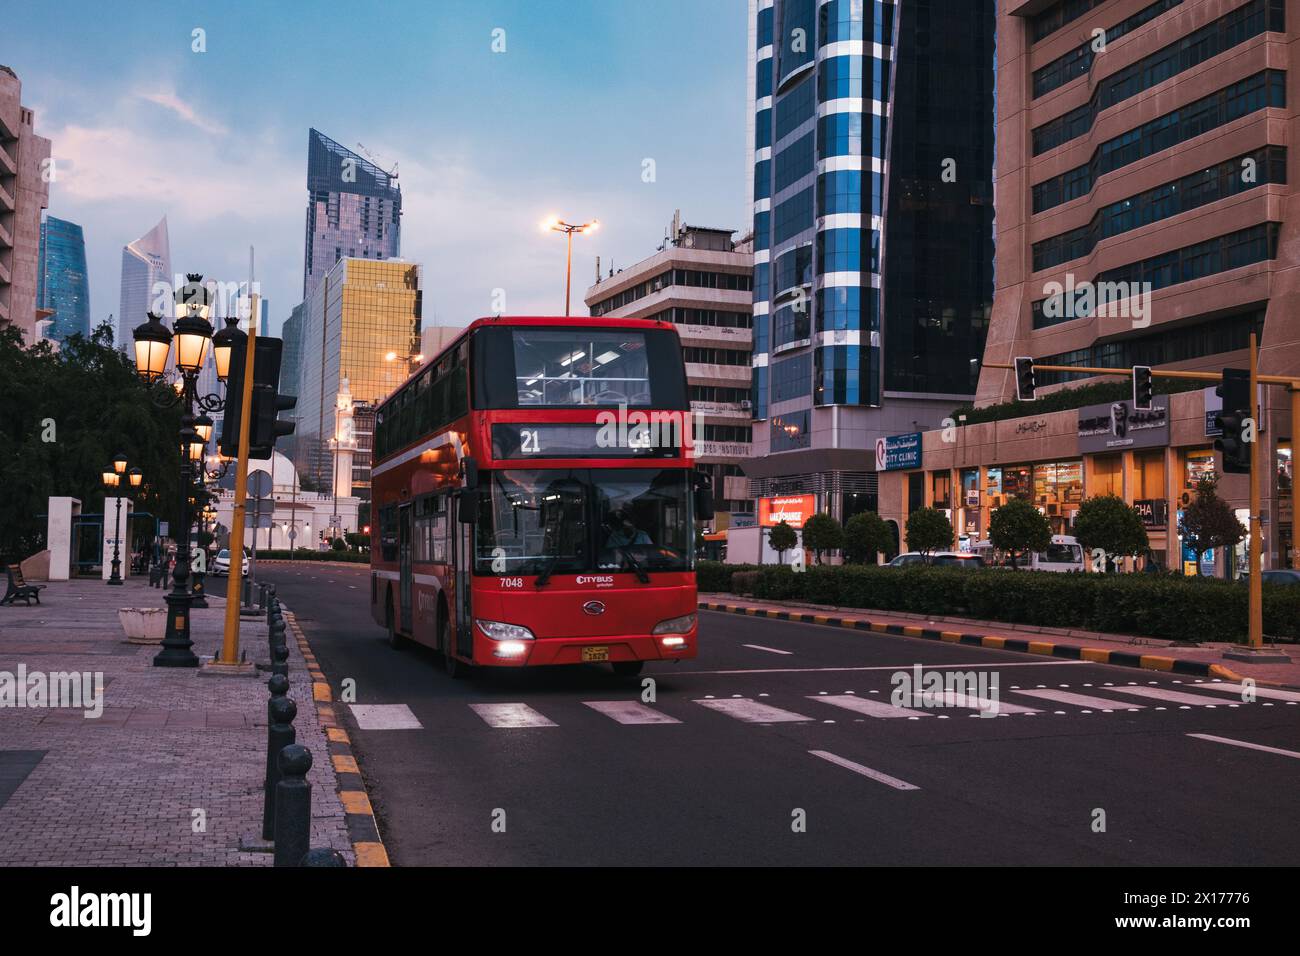 a red double decker public bus in Kuwait City, Kuwait Stock Photo